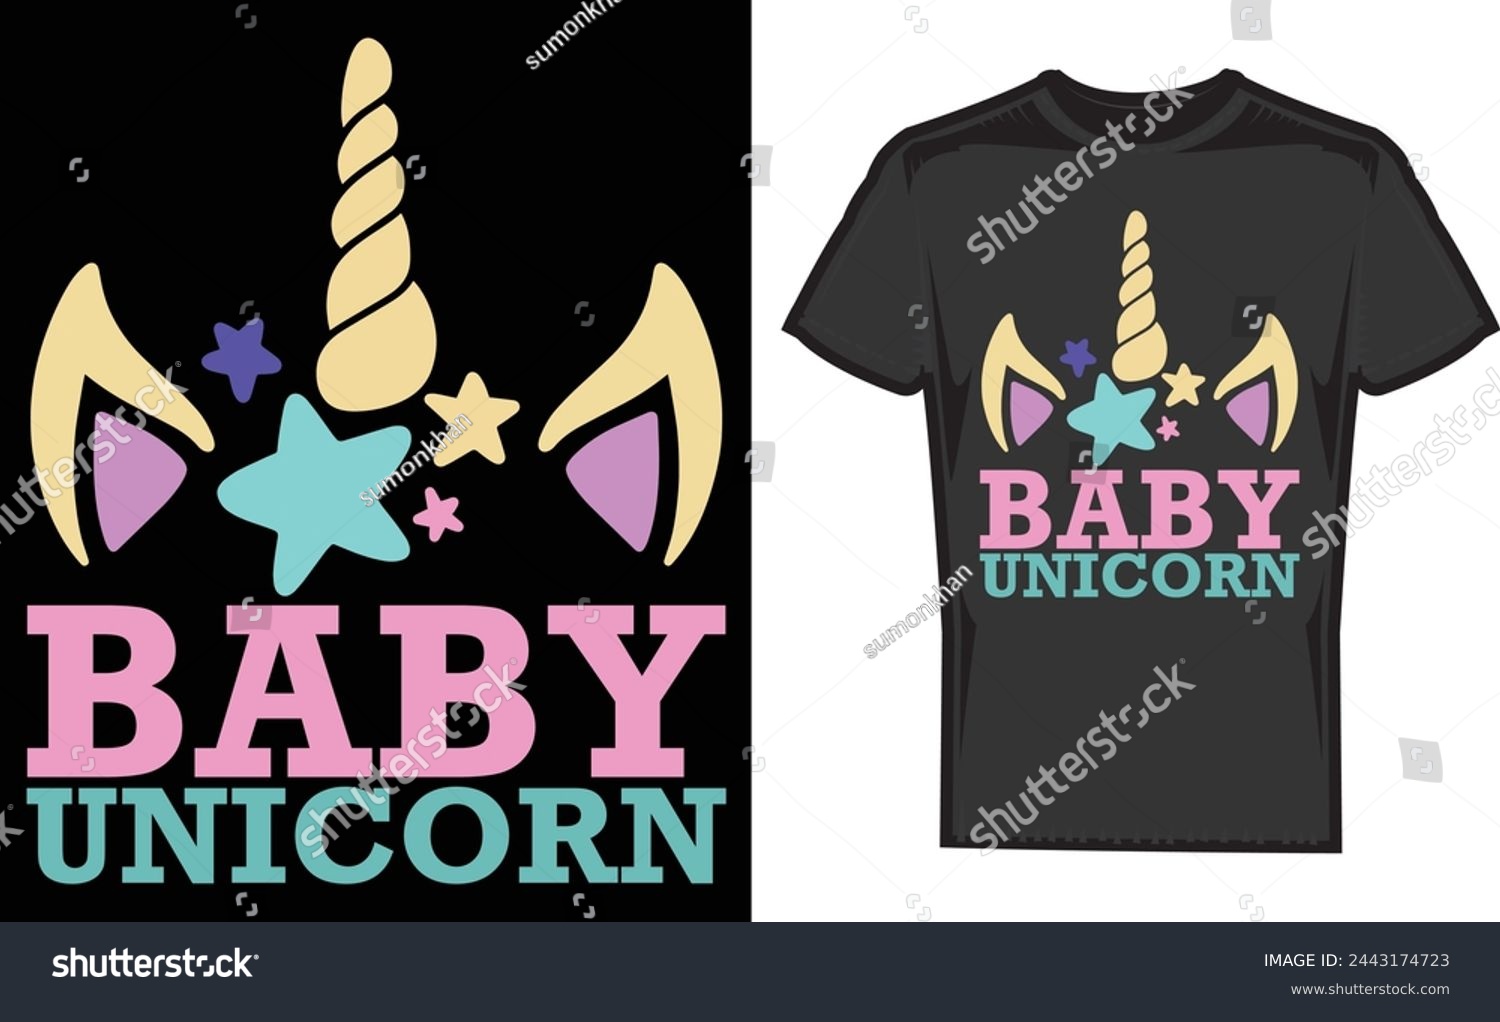 SVG of Baby Unicorn,Print Shirt Design,T Shirt,Gift,Gifts T Shirt,Print svg